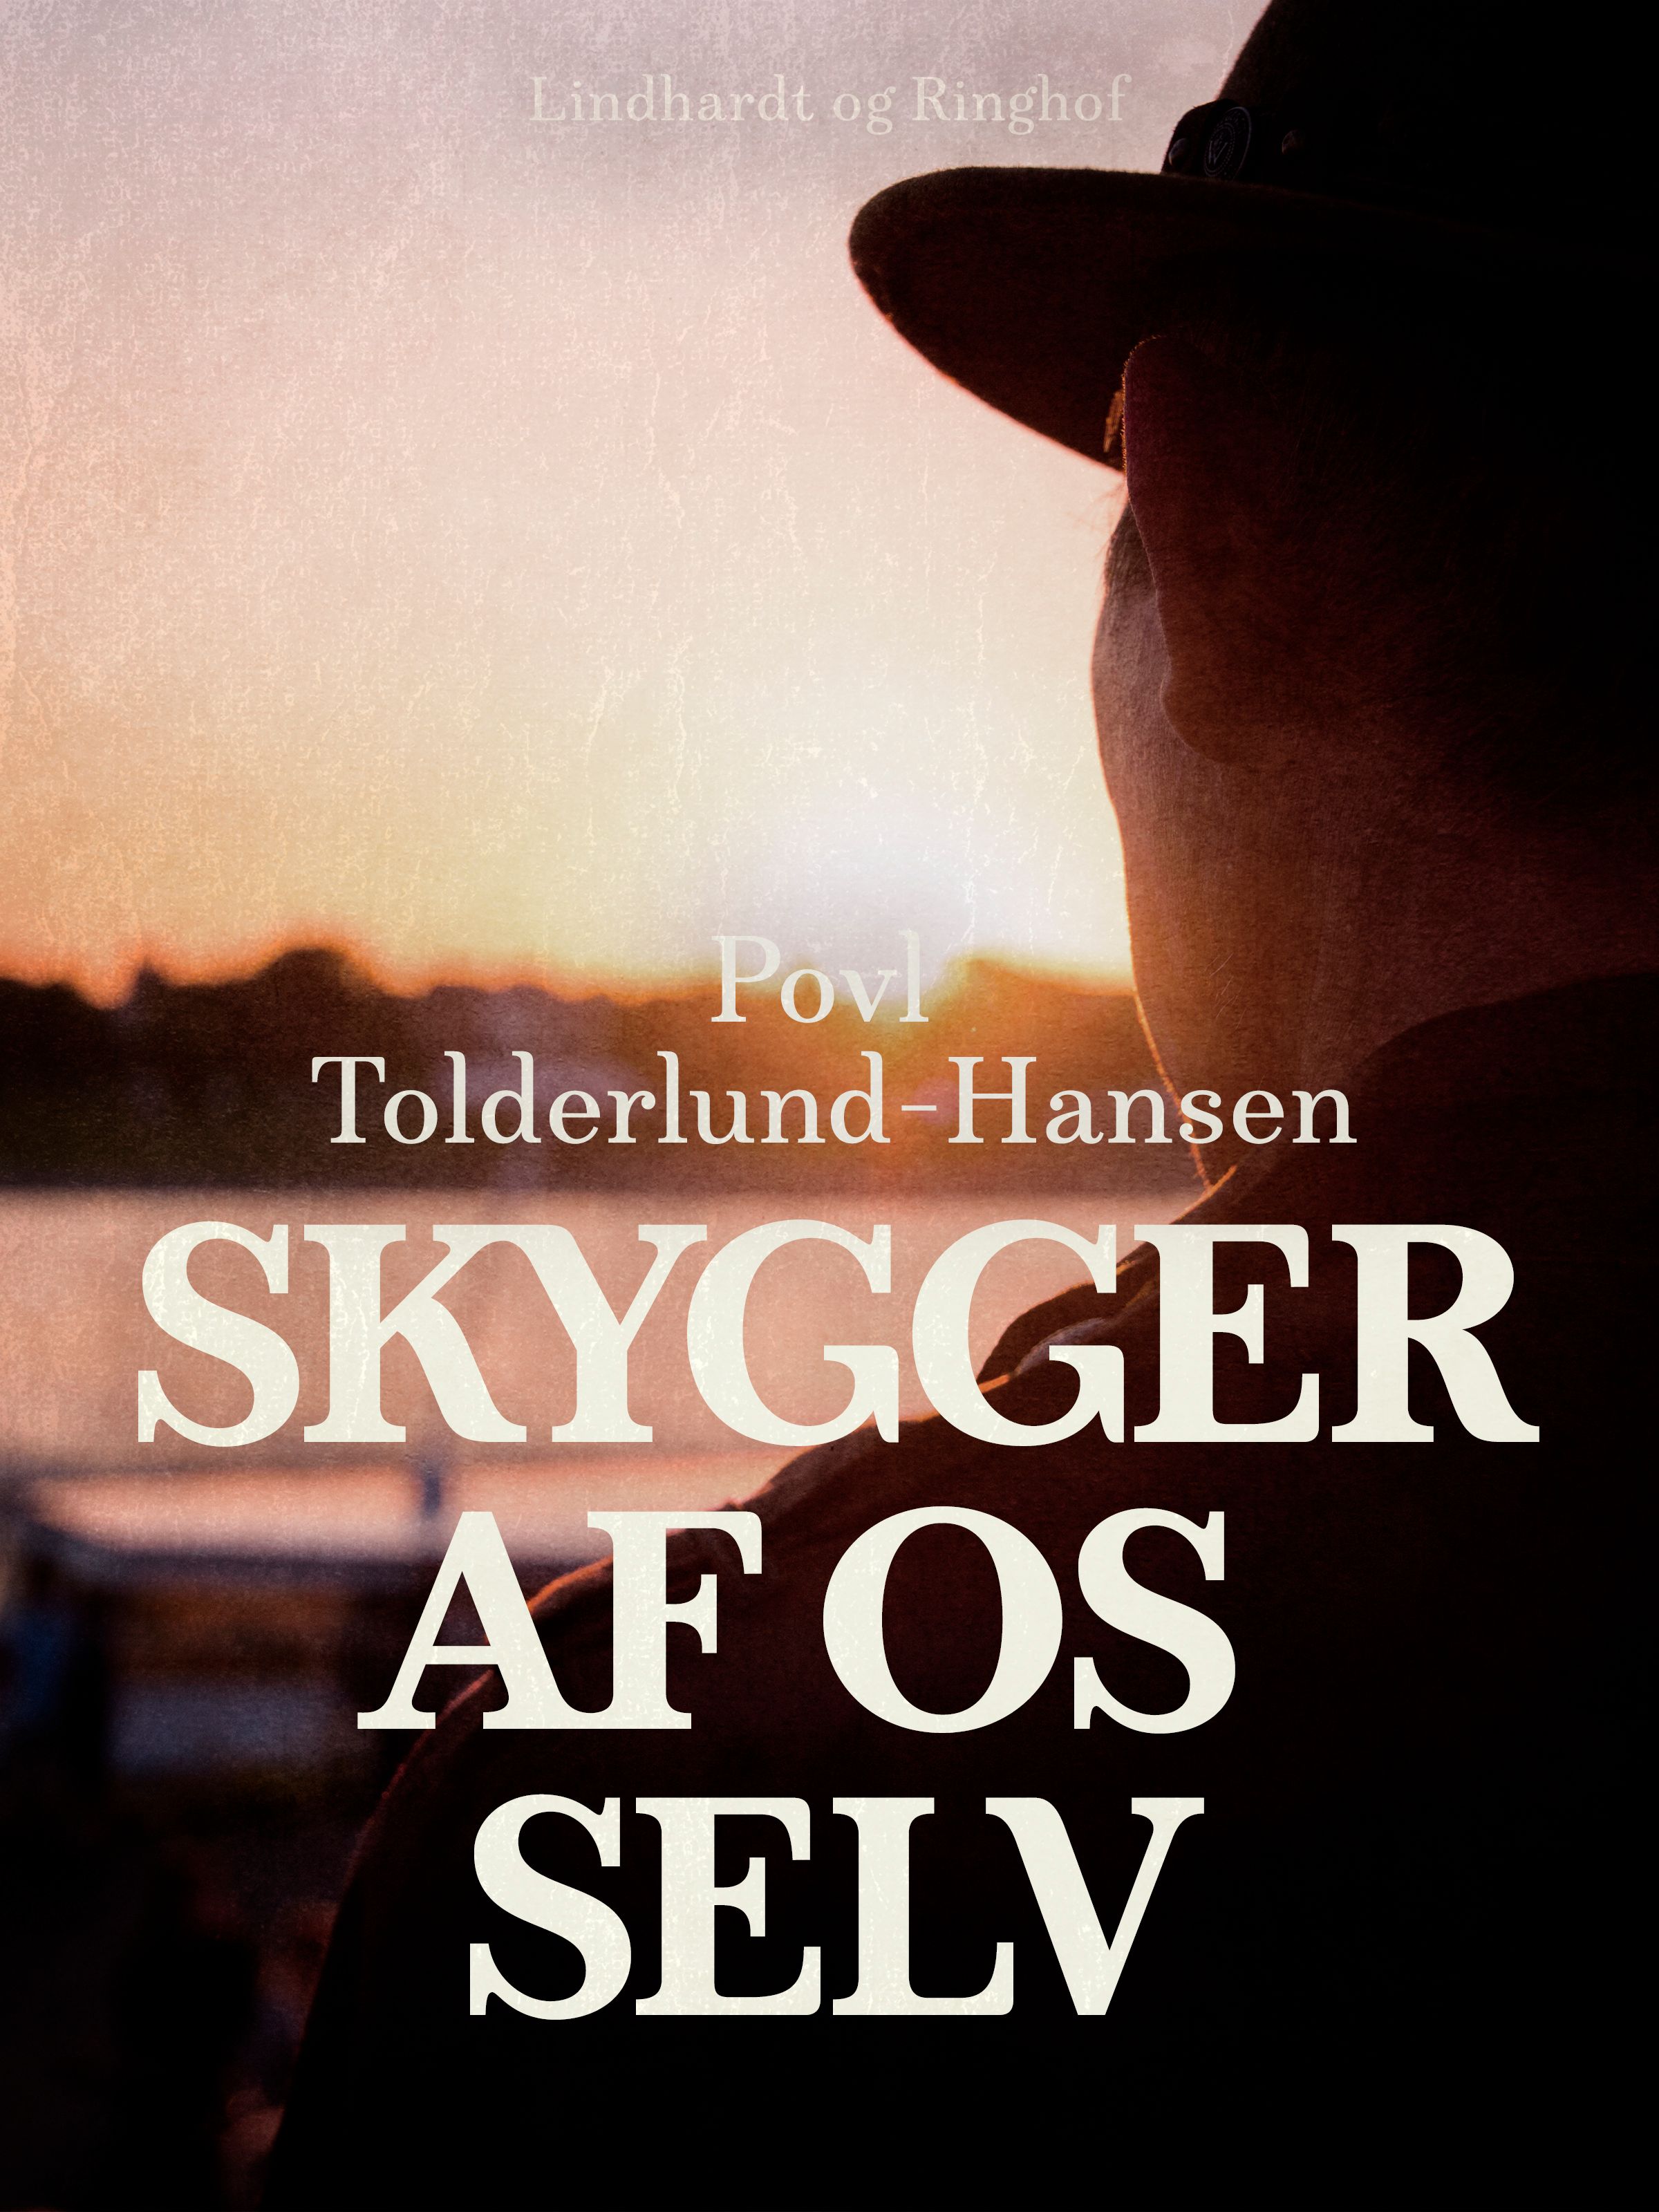 Skygger af os selv, eBook by Povl Tolderlund Hansen